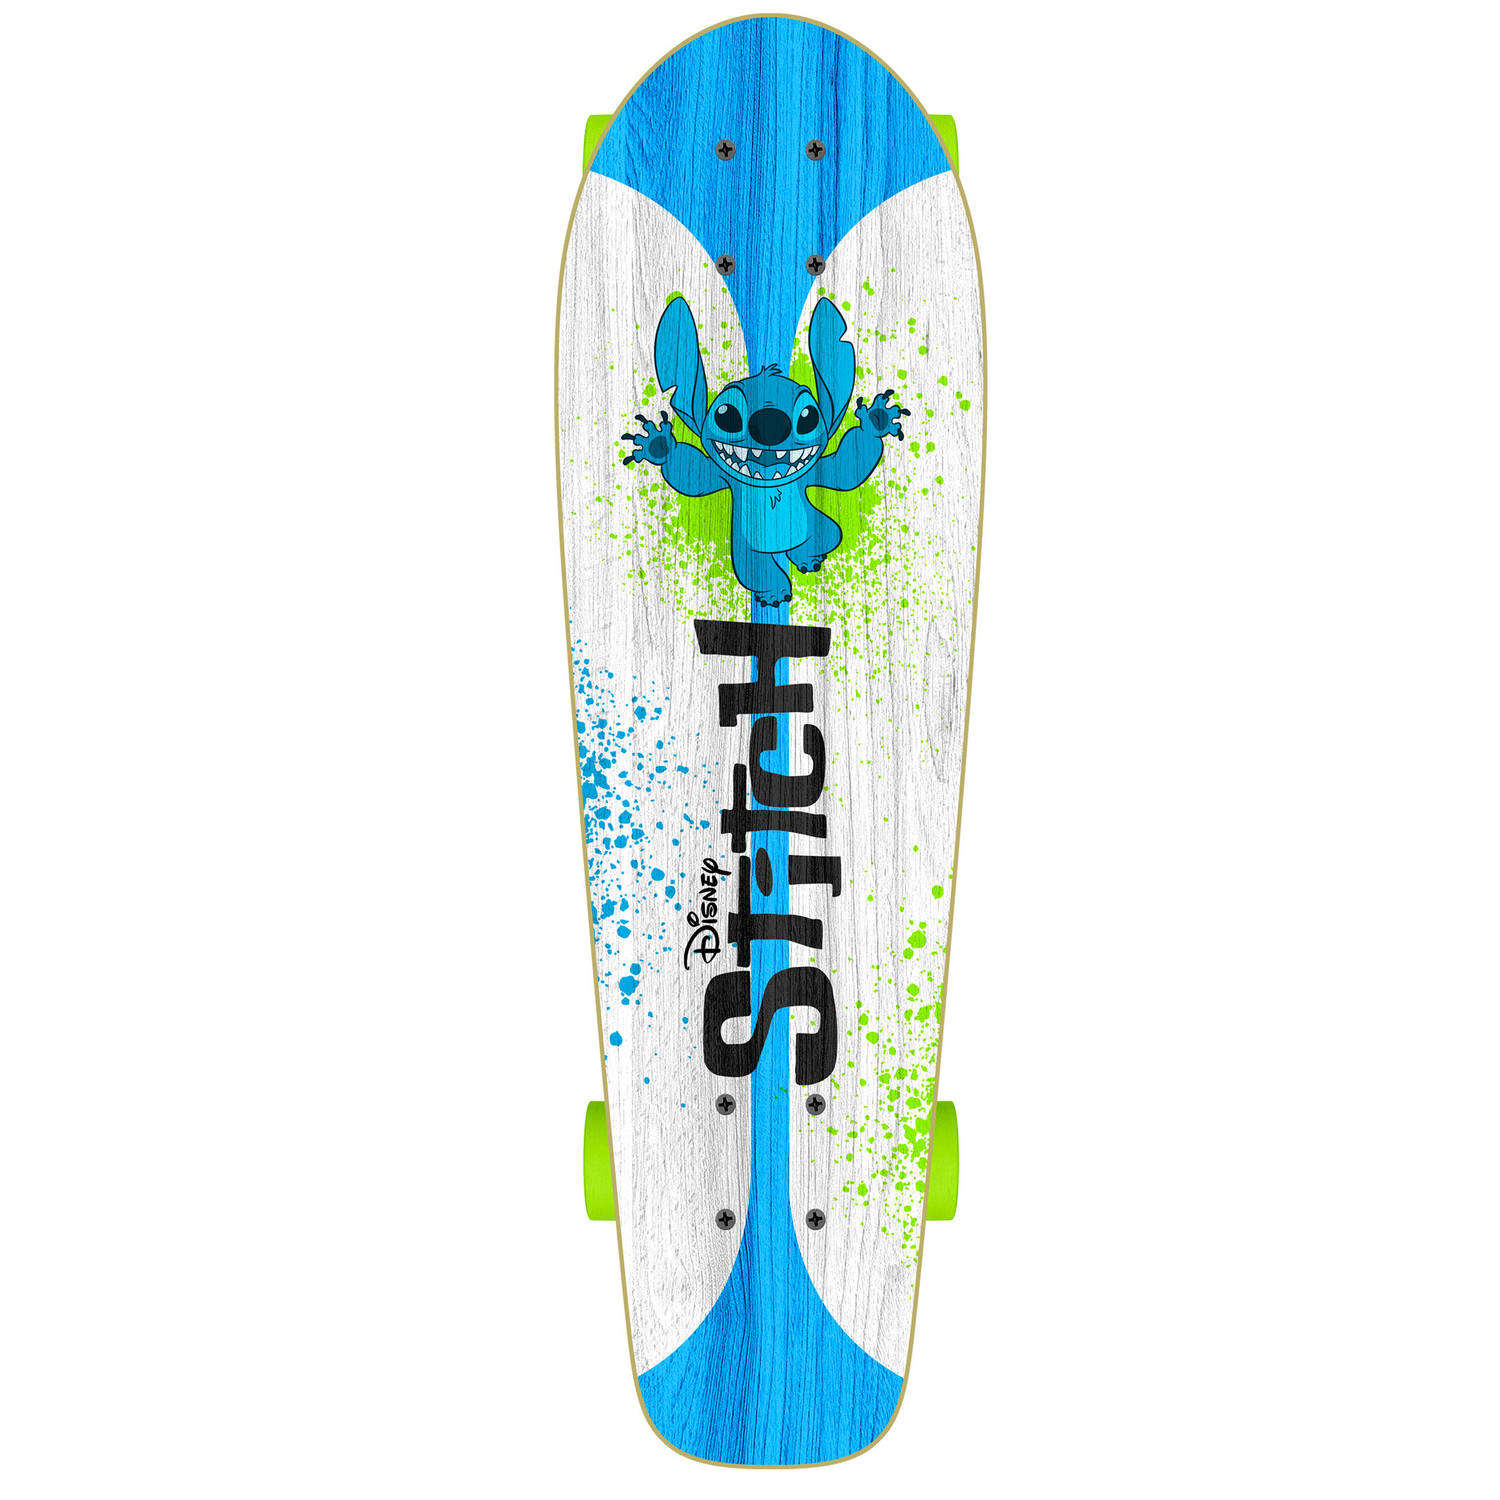 Disney Stitch skateboard 70 x 20 cm wit-blauw-groen